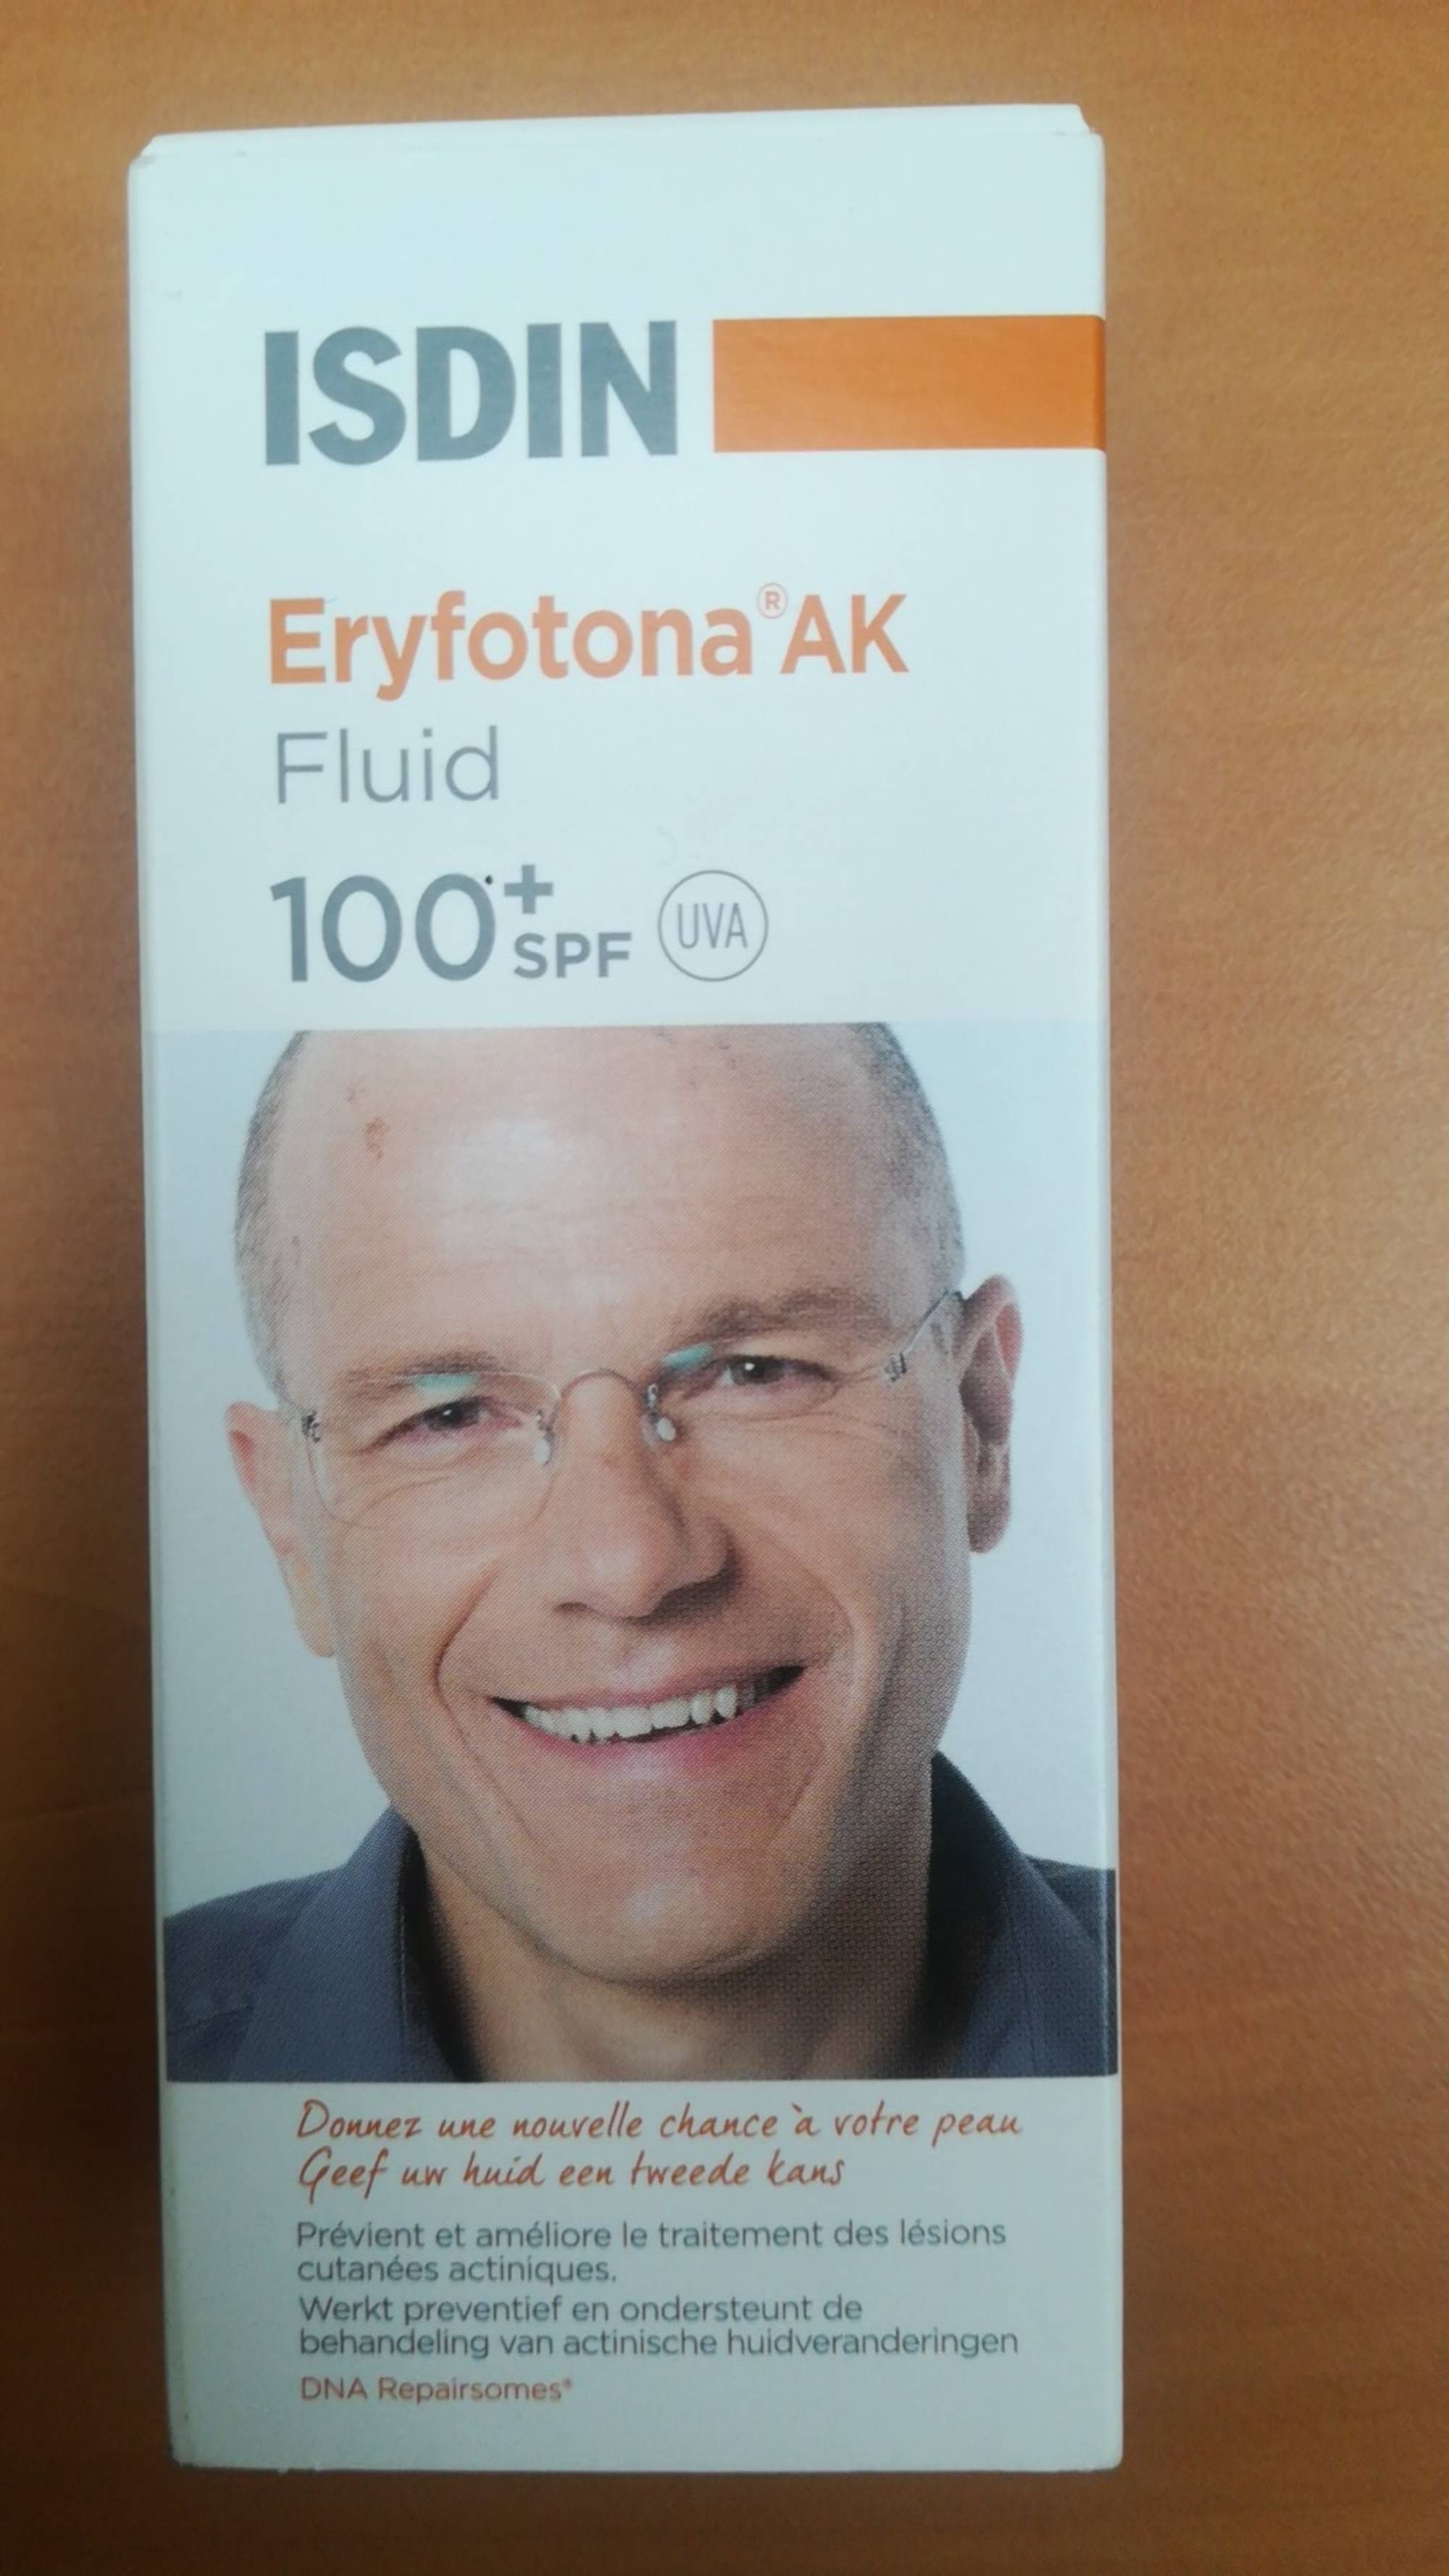 ISDIN - Eryfotona AK fluid spf 100+ uva